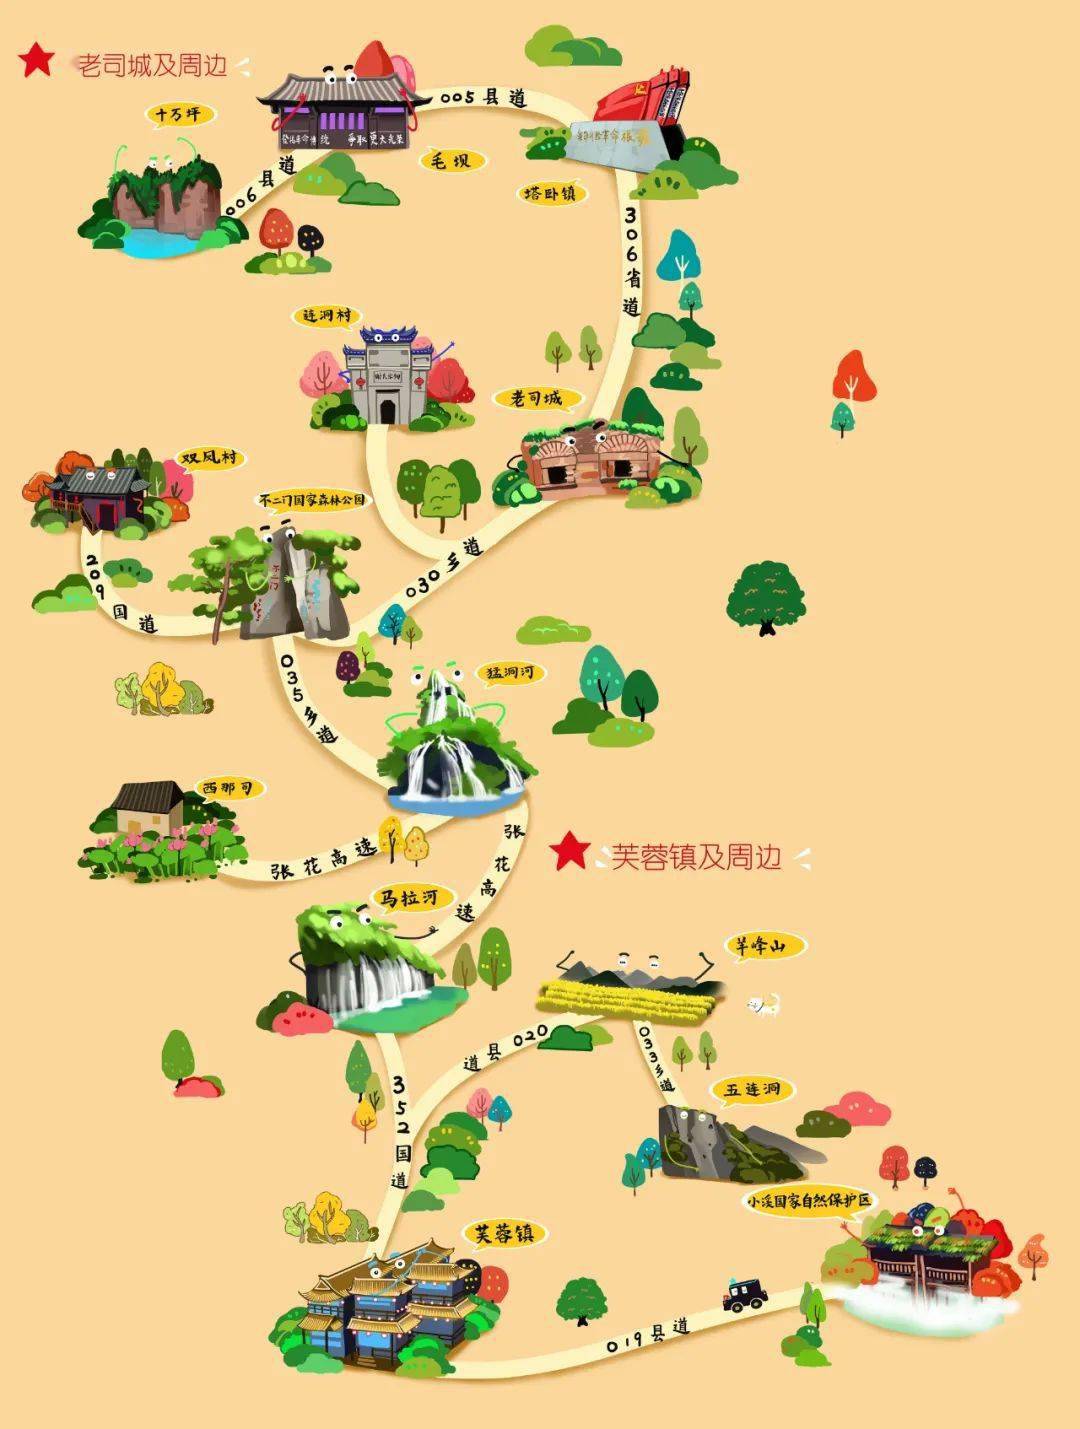 你一定少不了 这份精美的手绘旅游地图 xiang xi 吉首 xiang xi 凤凰